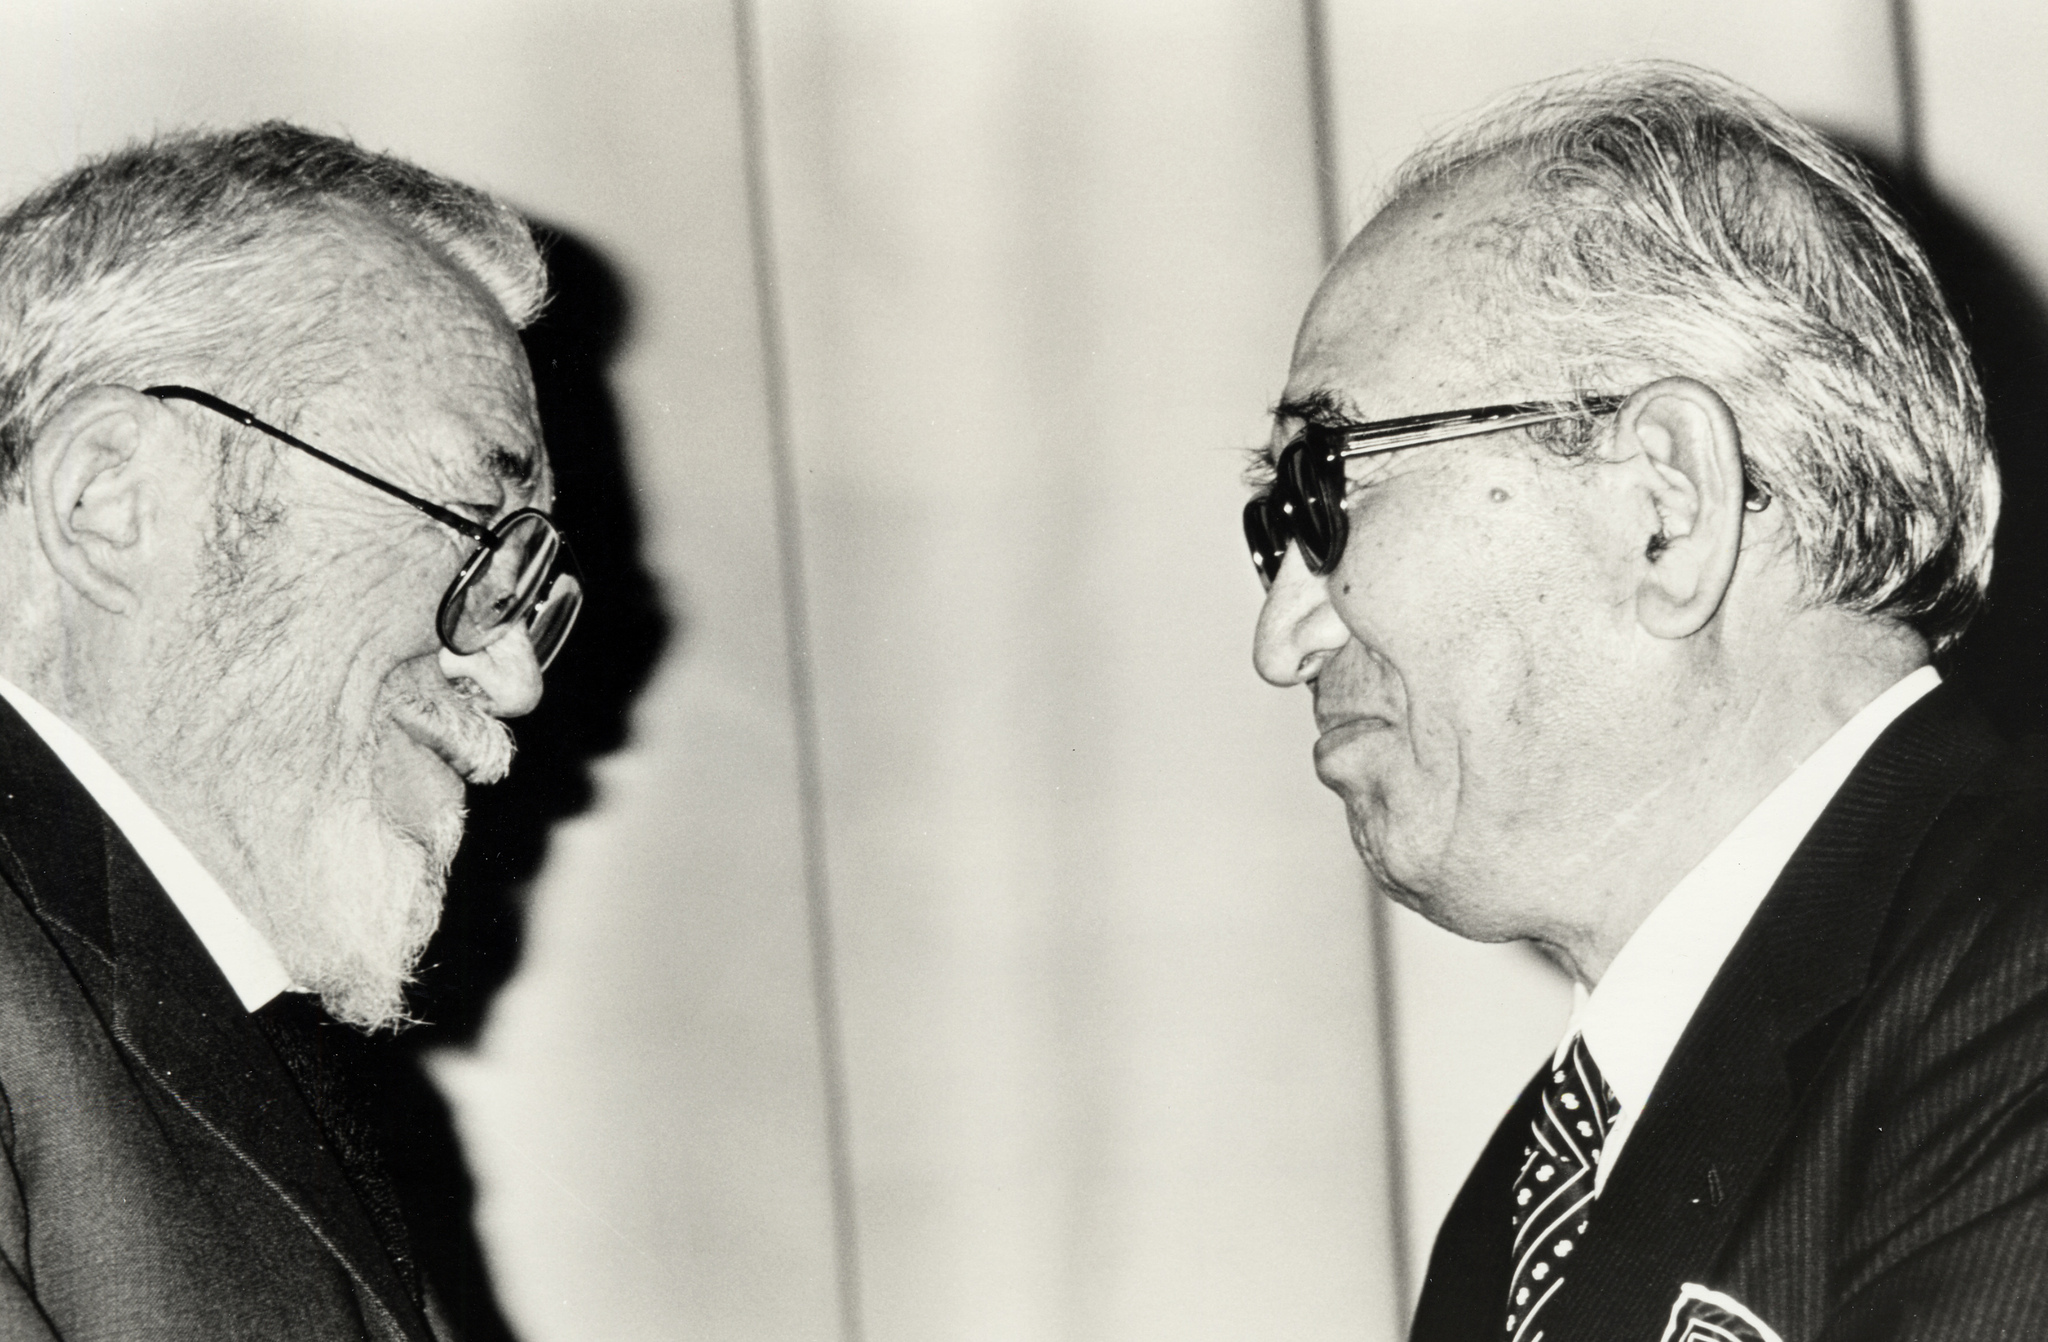 Akira Kurosawa and John Huston